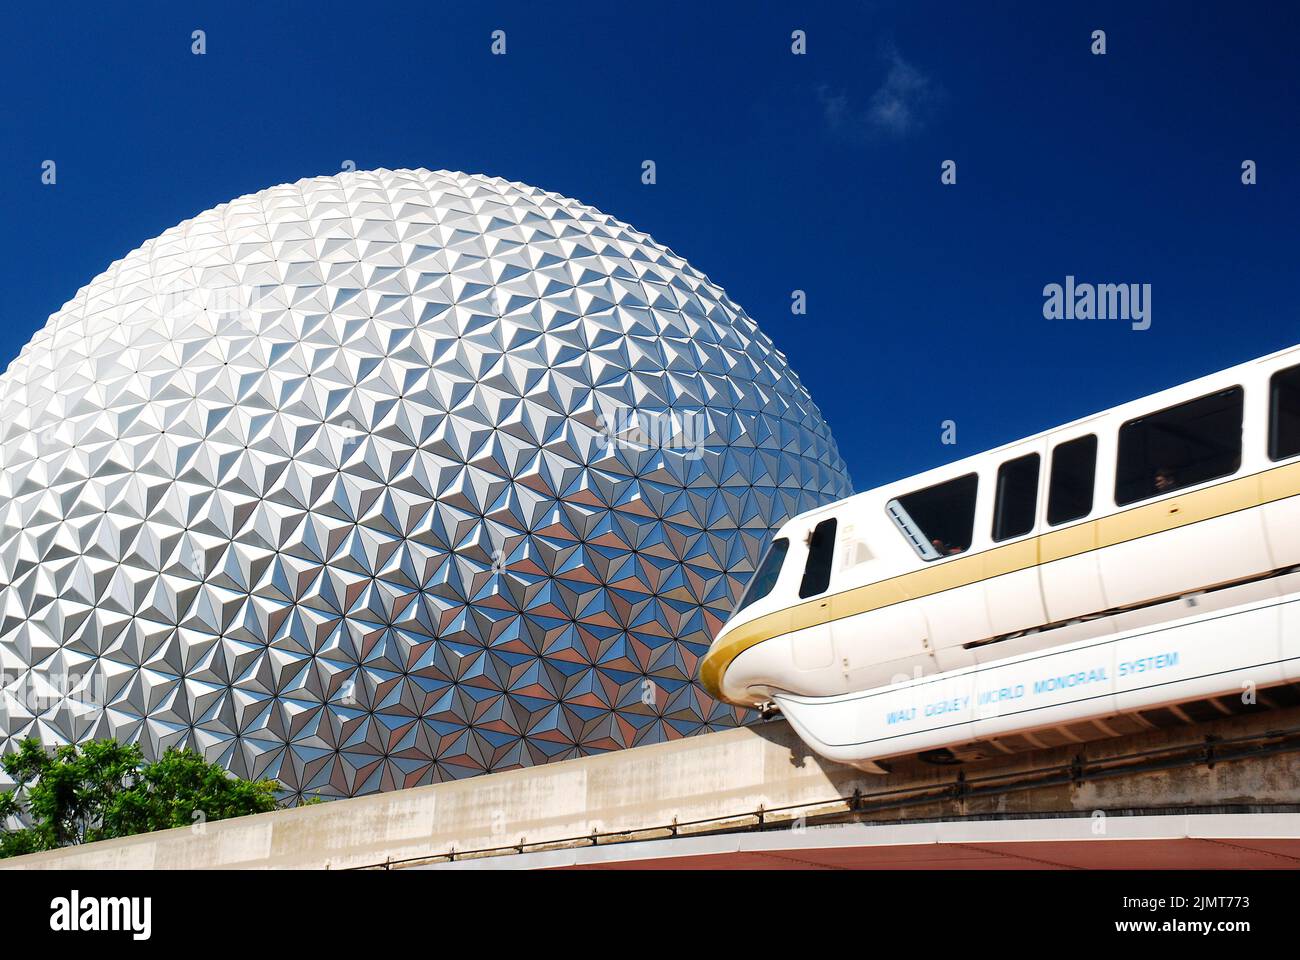 La monorotaia AA viaggia di fronte alla sfera di Spaceship Earth, un grande punto di riferimento all'Epcot Center of Walt Disney World di Orlando, Florida Foto Stock